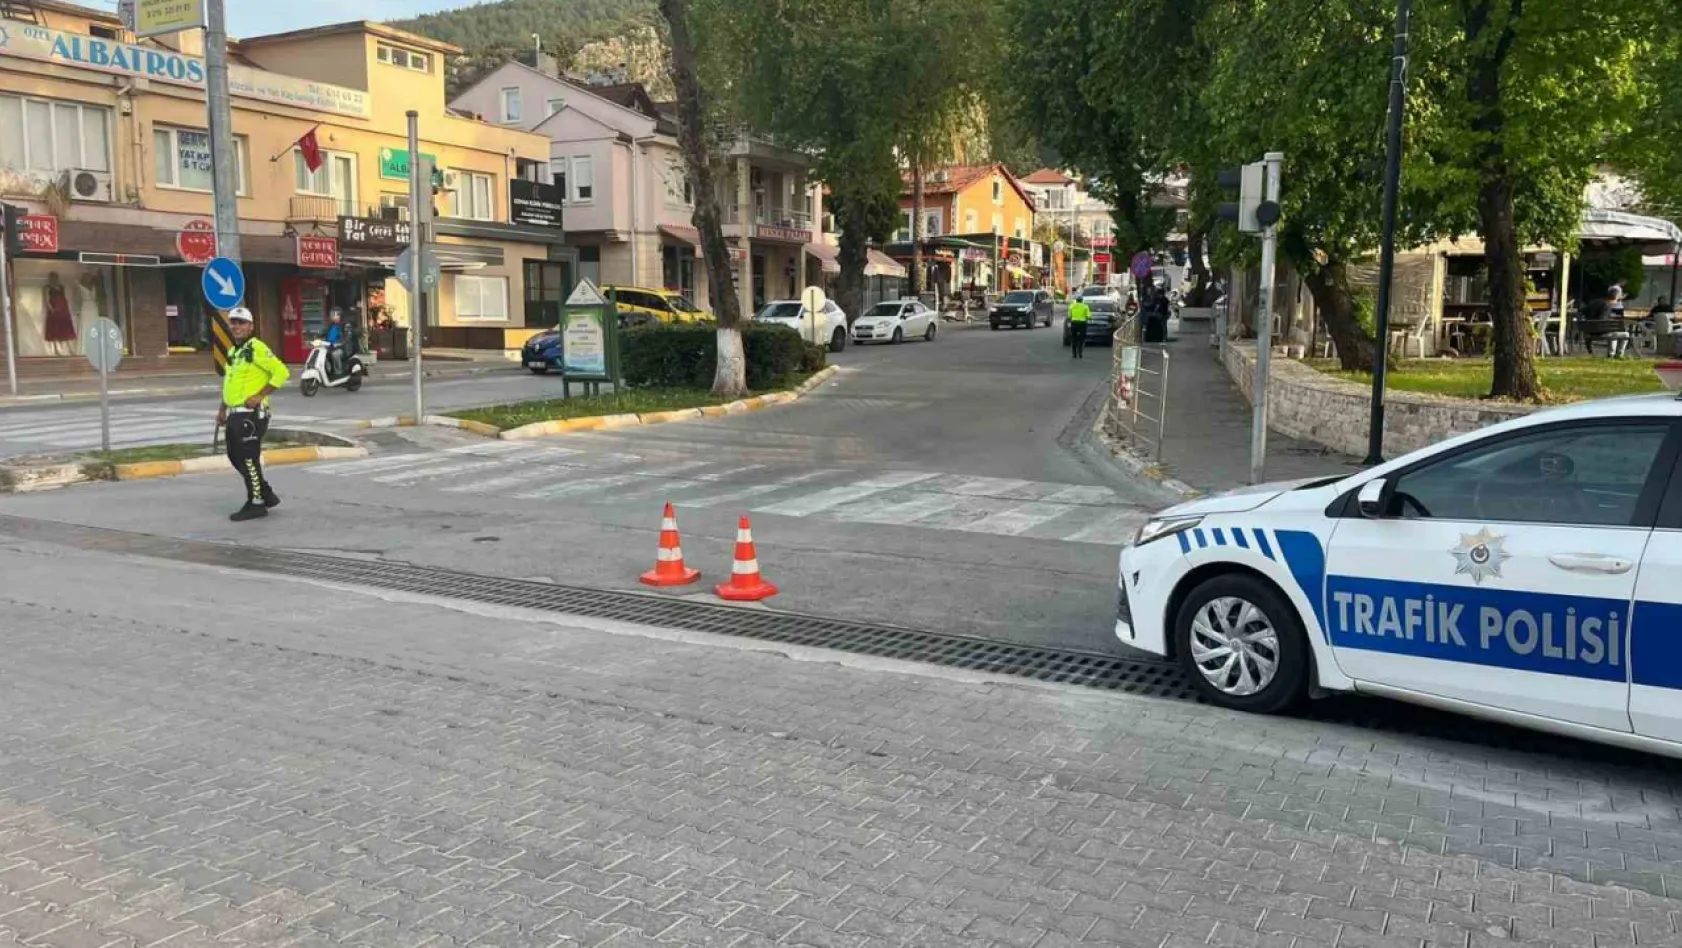 Fethiye'de seçim güvenliği nedeniyle yollar trafiğe kapatıldı